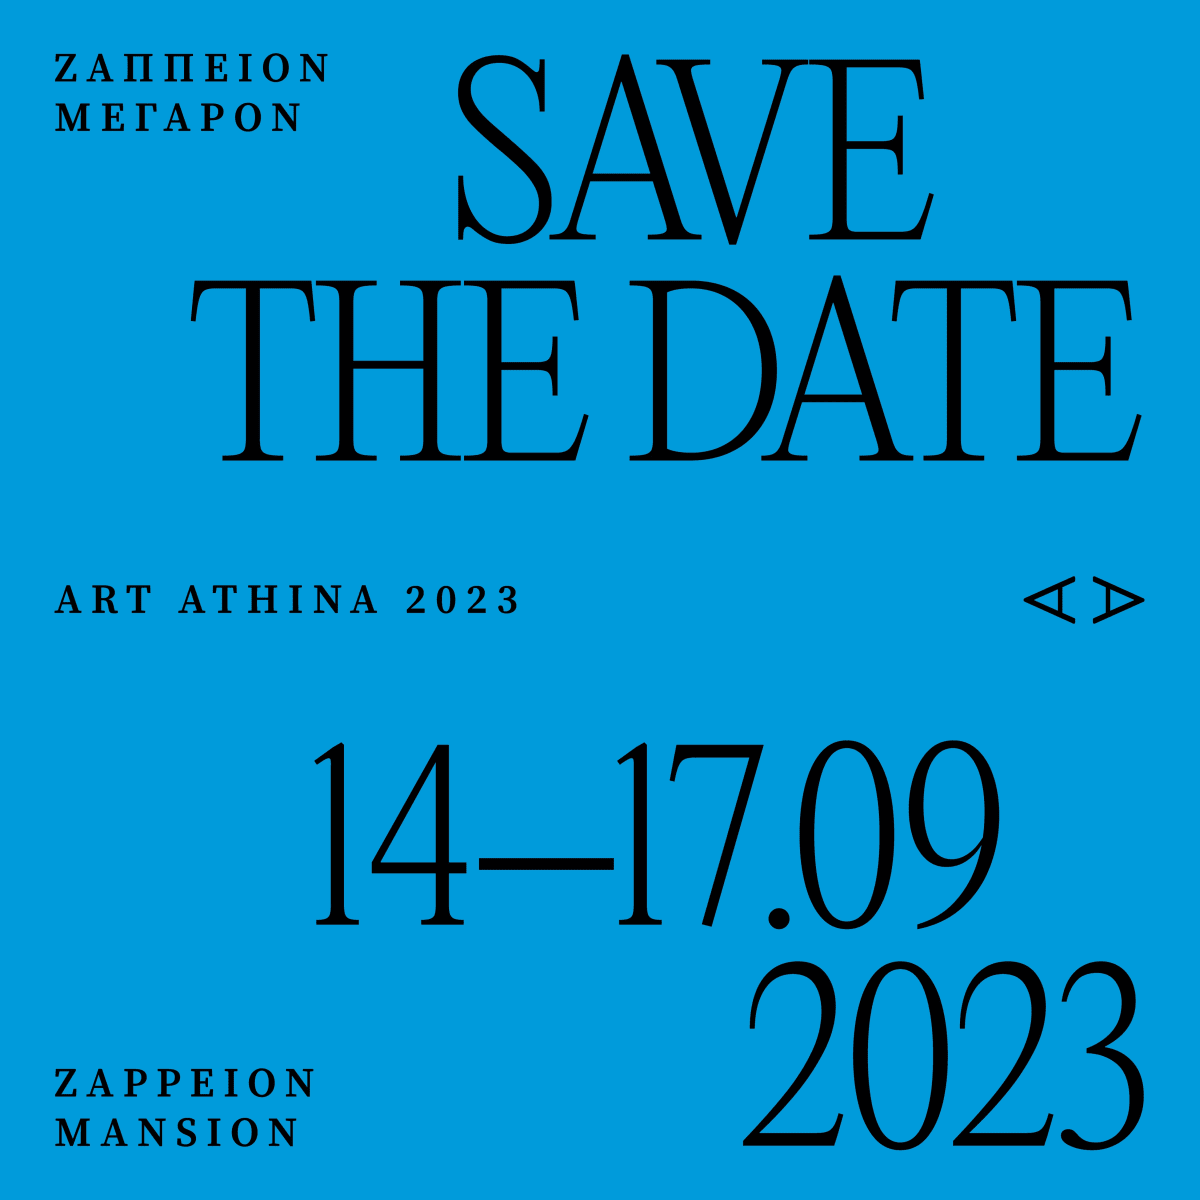 Art Athina 2023